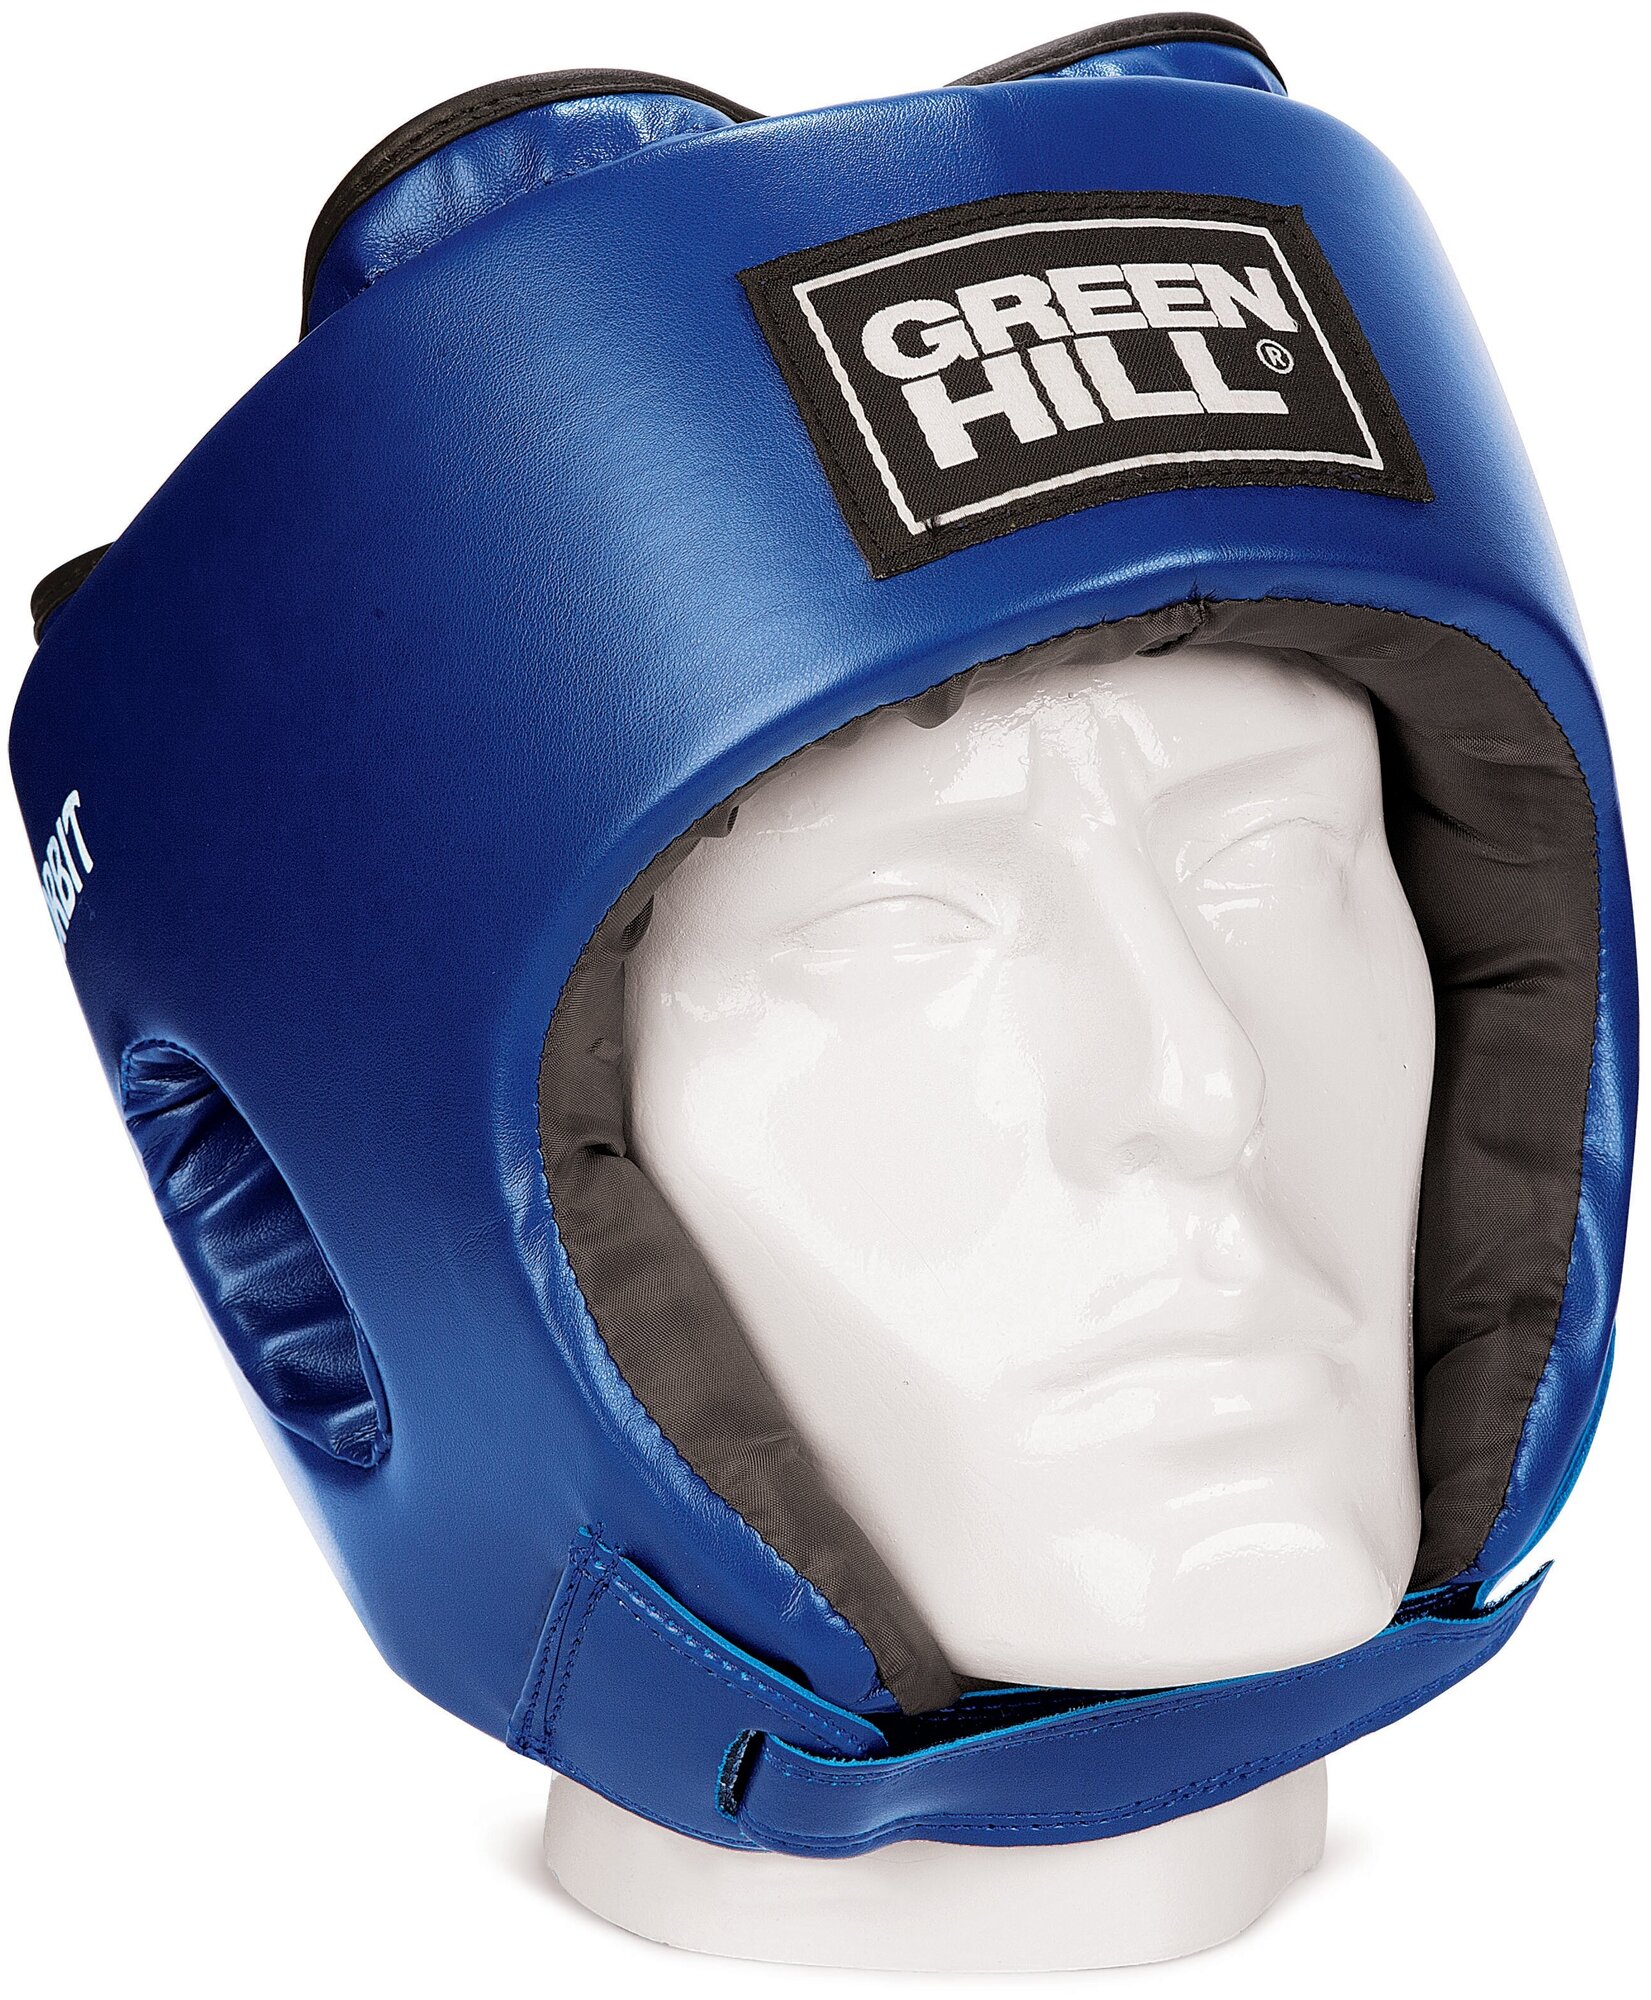 HGO-4030 Боксерский шлем ORBIT детский синий - Green Hill - Синий - M